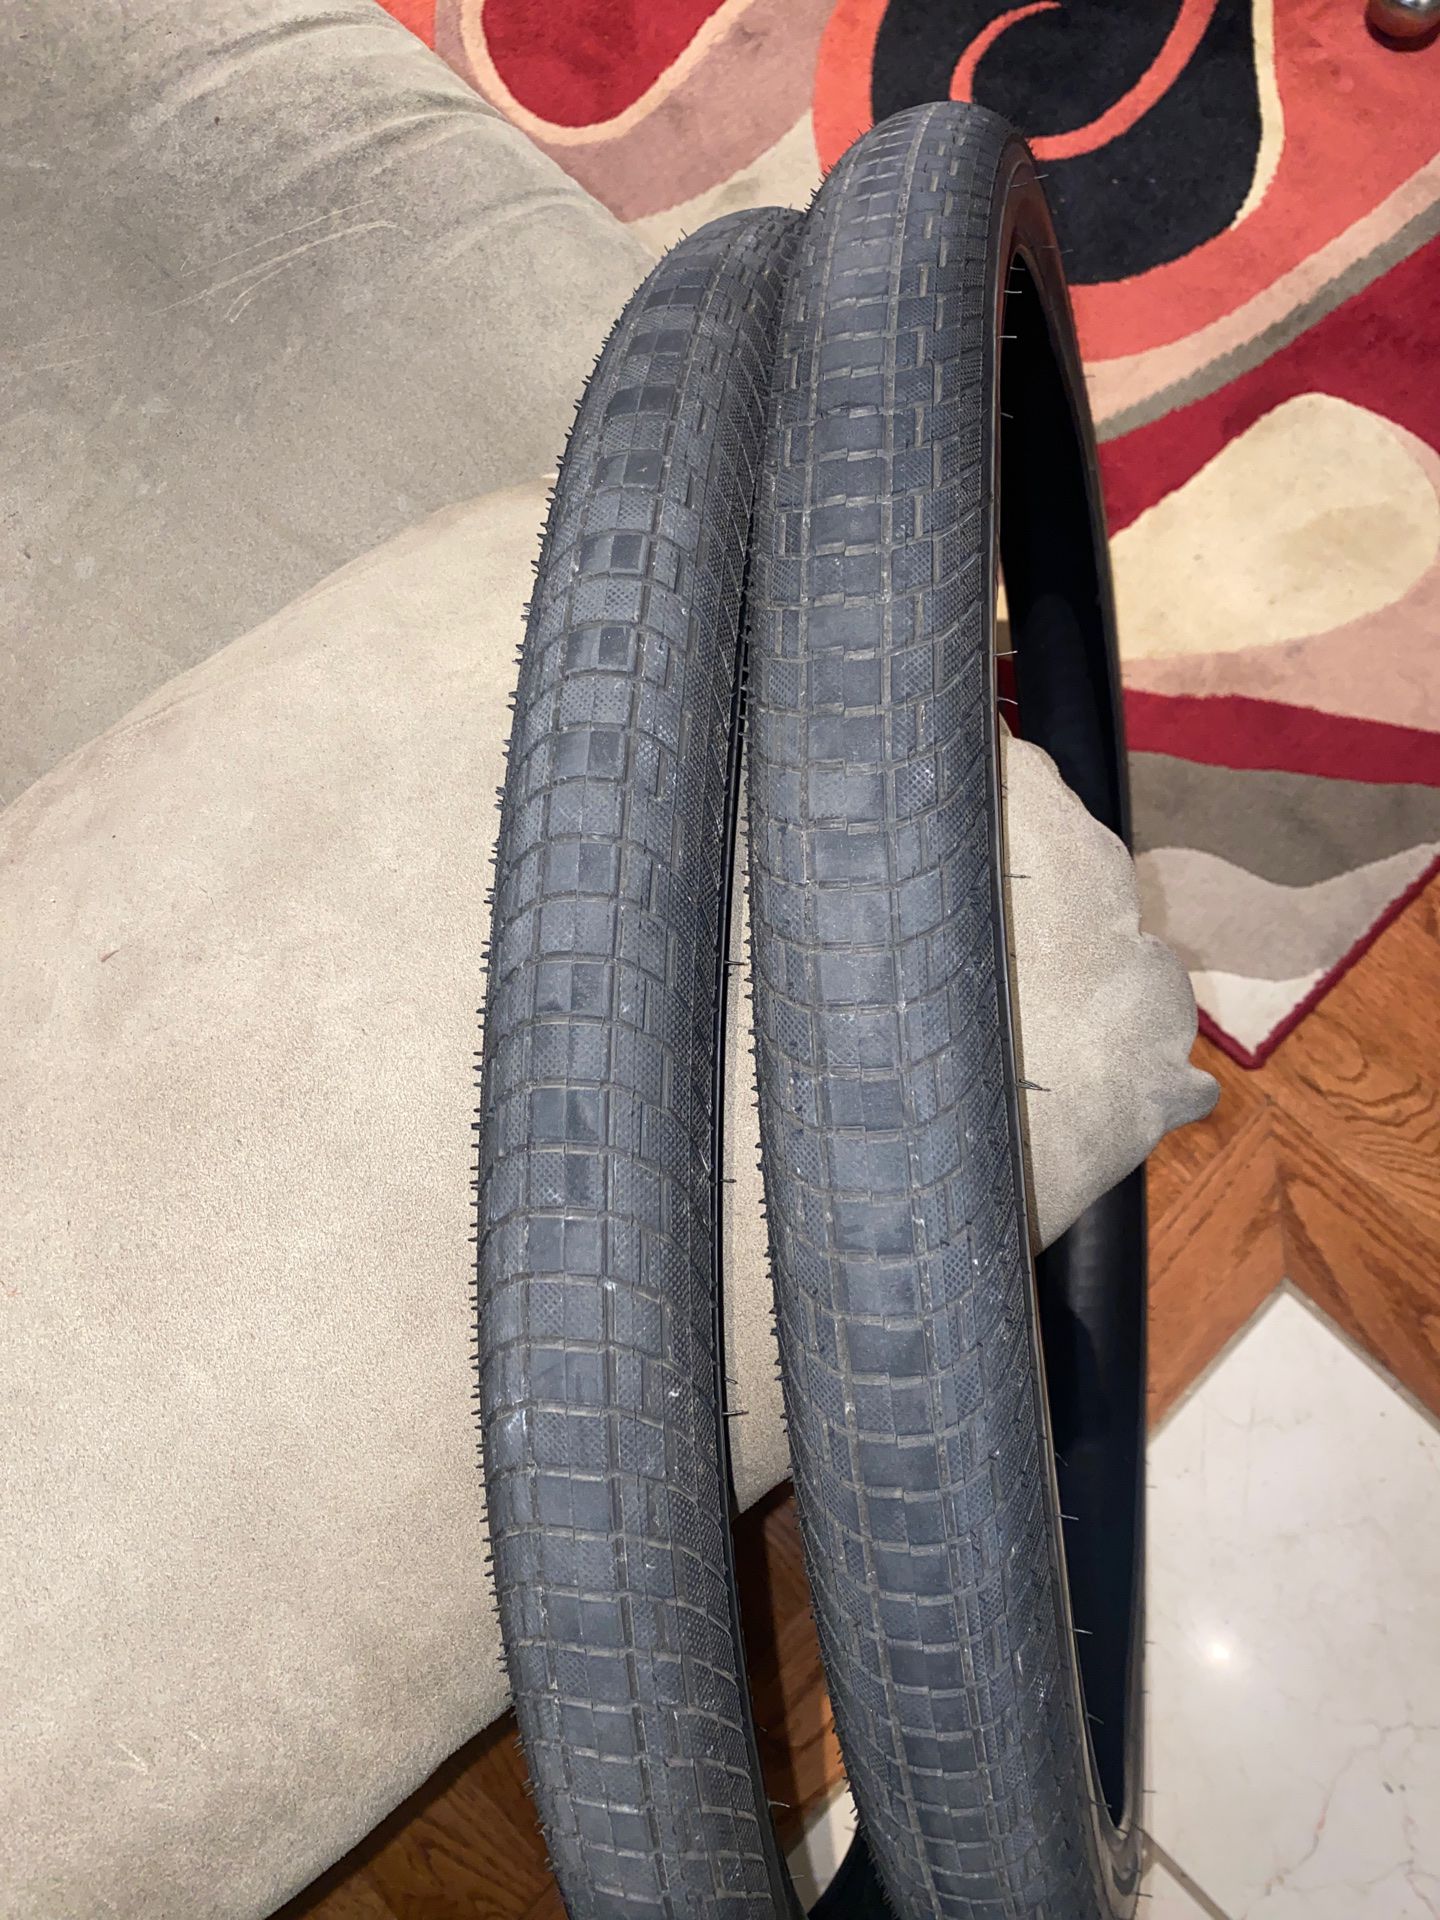 2 bike tires